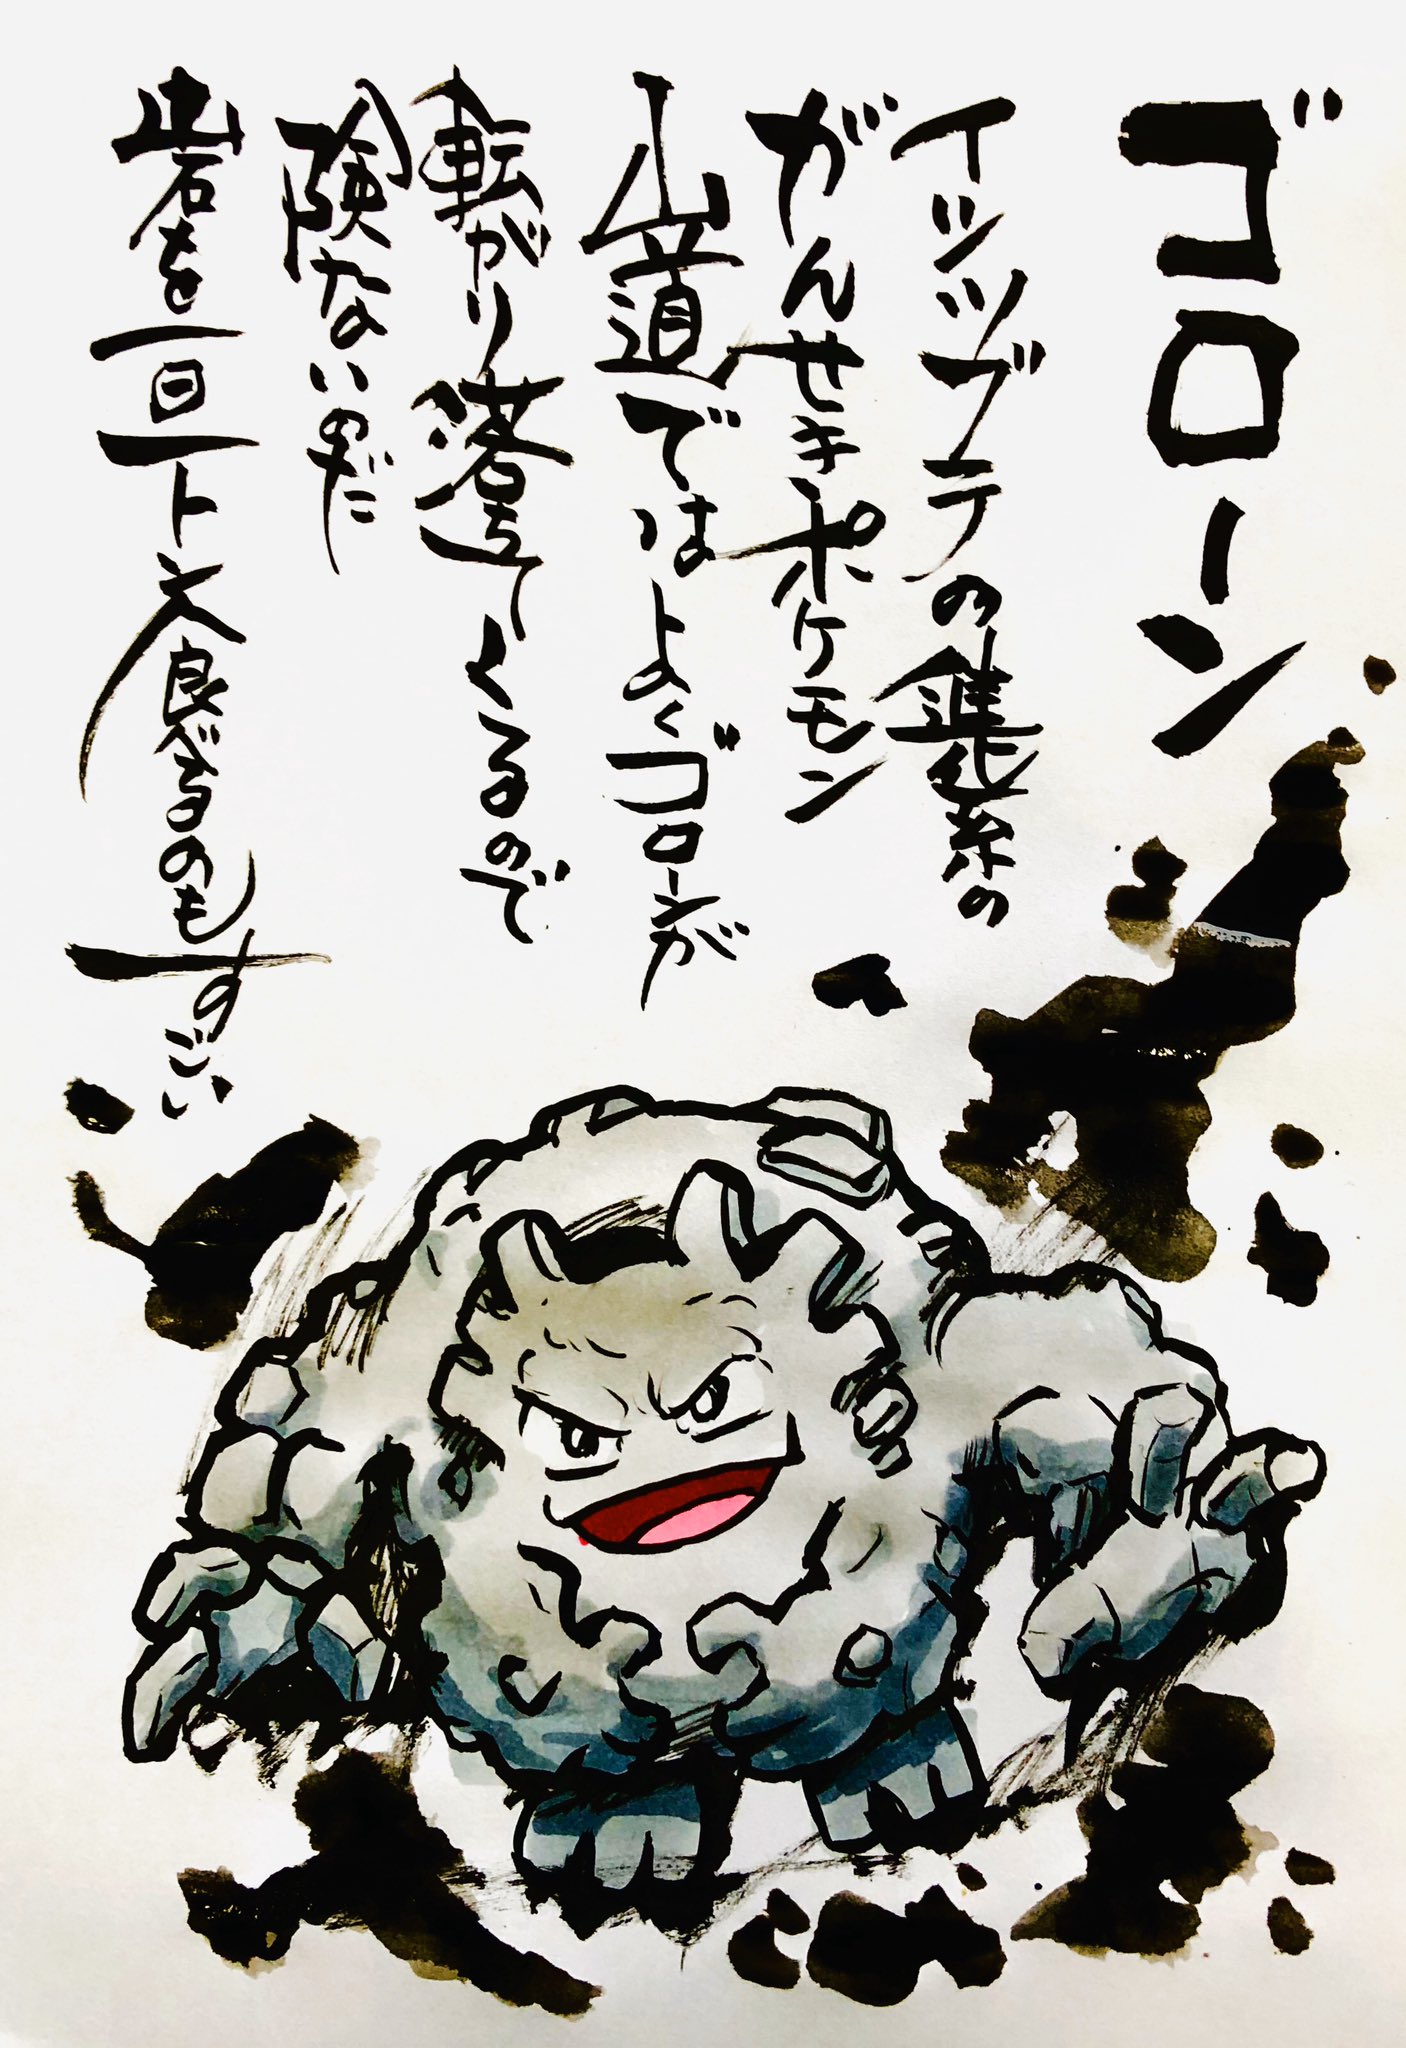 Aki Shimamoto ポケモン絵師休憩中エネルギーアートクリエーター Twitter पर 筆ペンでポケモンを描く ゴローン イシツブテの 進化系のがんせきポケモン 山道ではよくゴローンが転がり落ちてくるので危ないのだ 岩を一日一トン食べるのもすごい ポケモン ゴローン